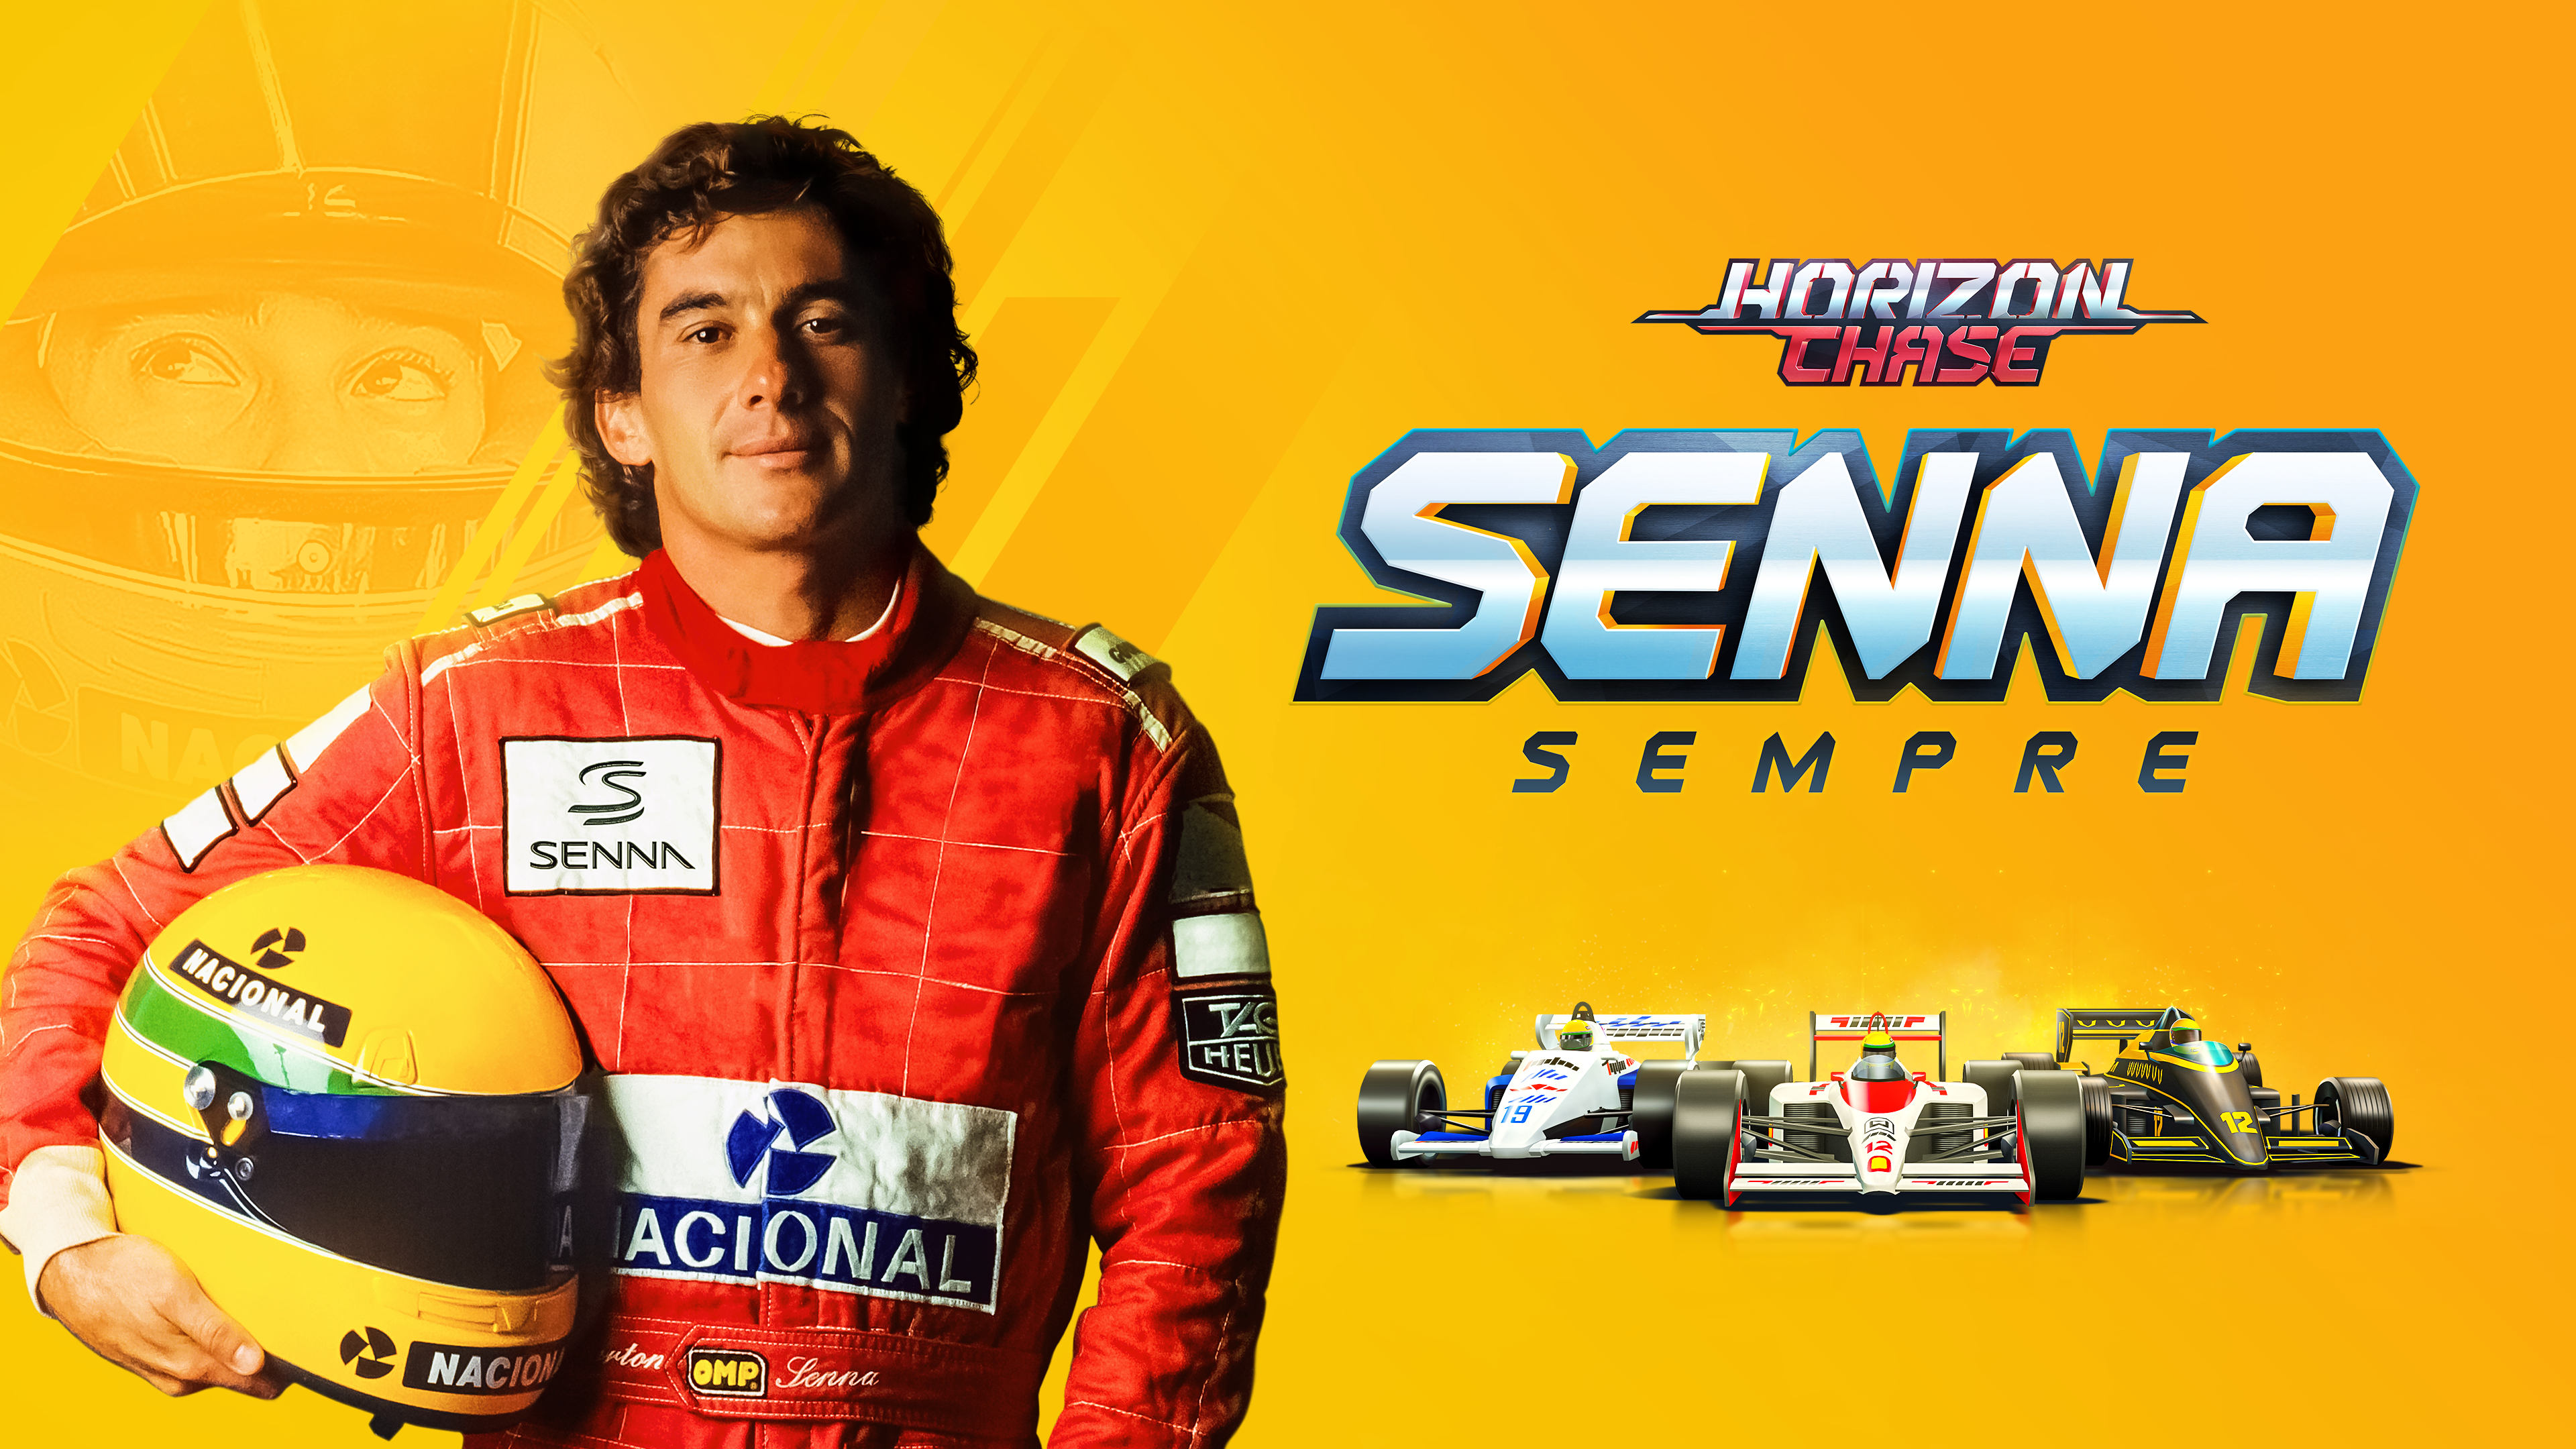 AQUIRIS | Nova expansão da franquia Horizon Chase será Senna Sempre